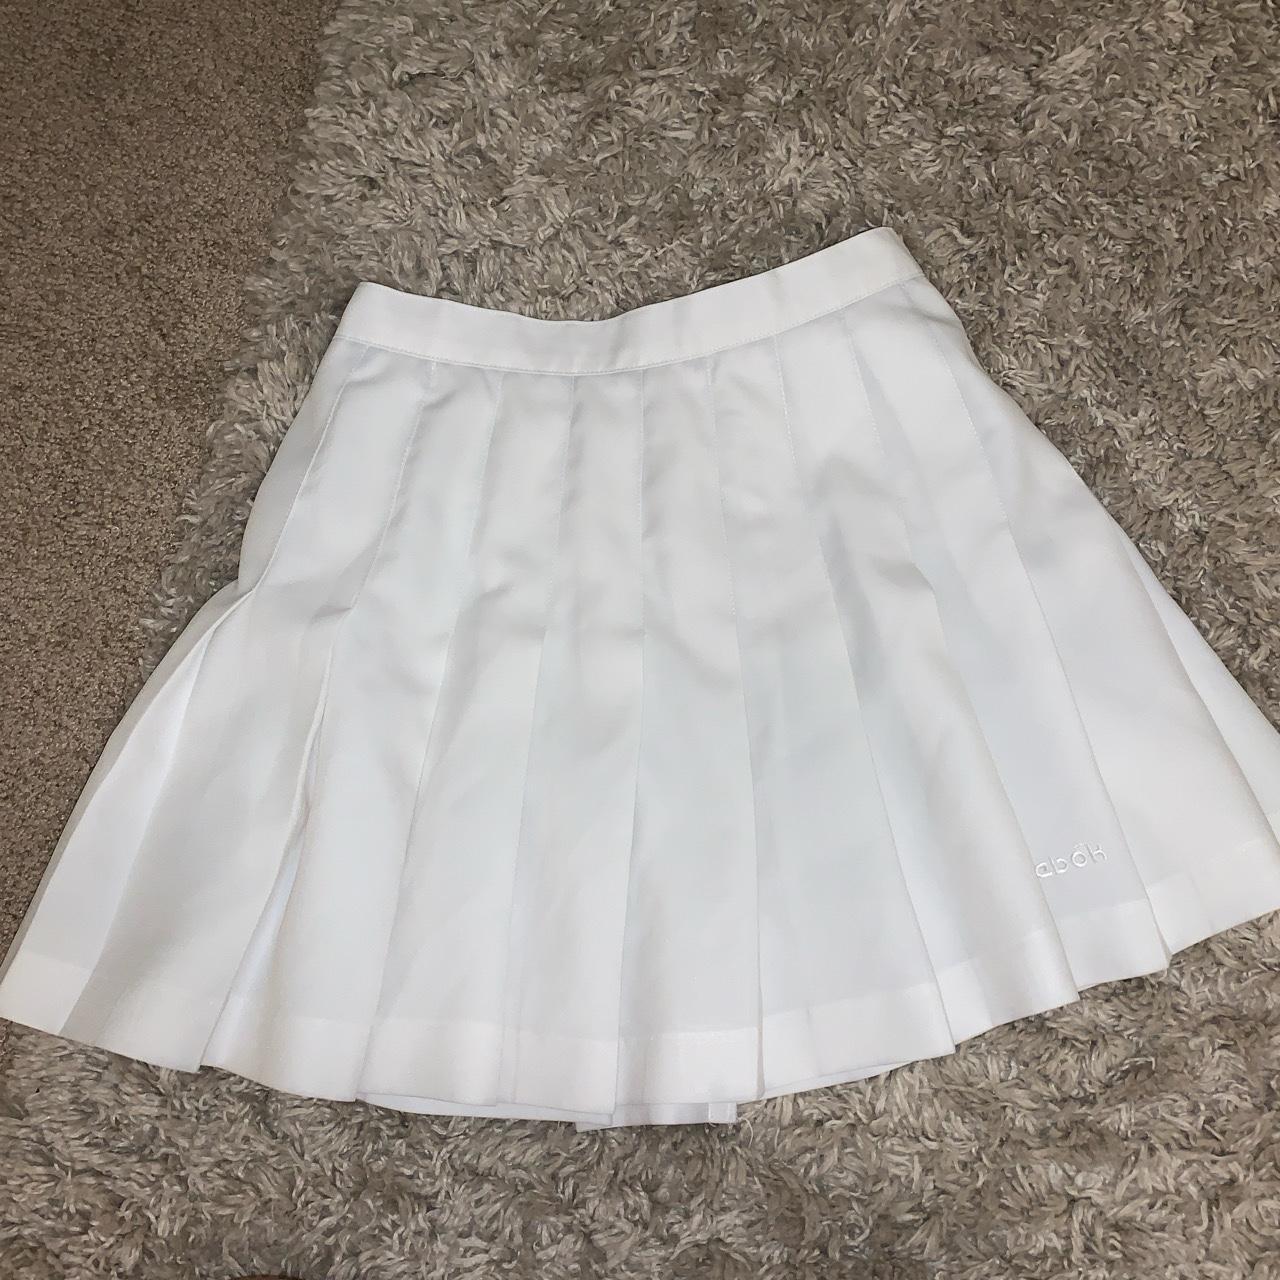 White tennis skirt 6 - Depop